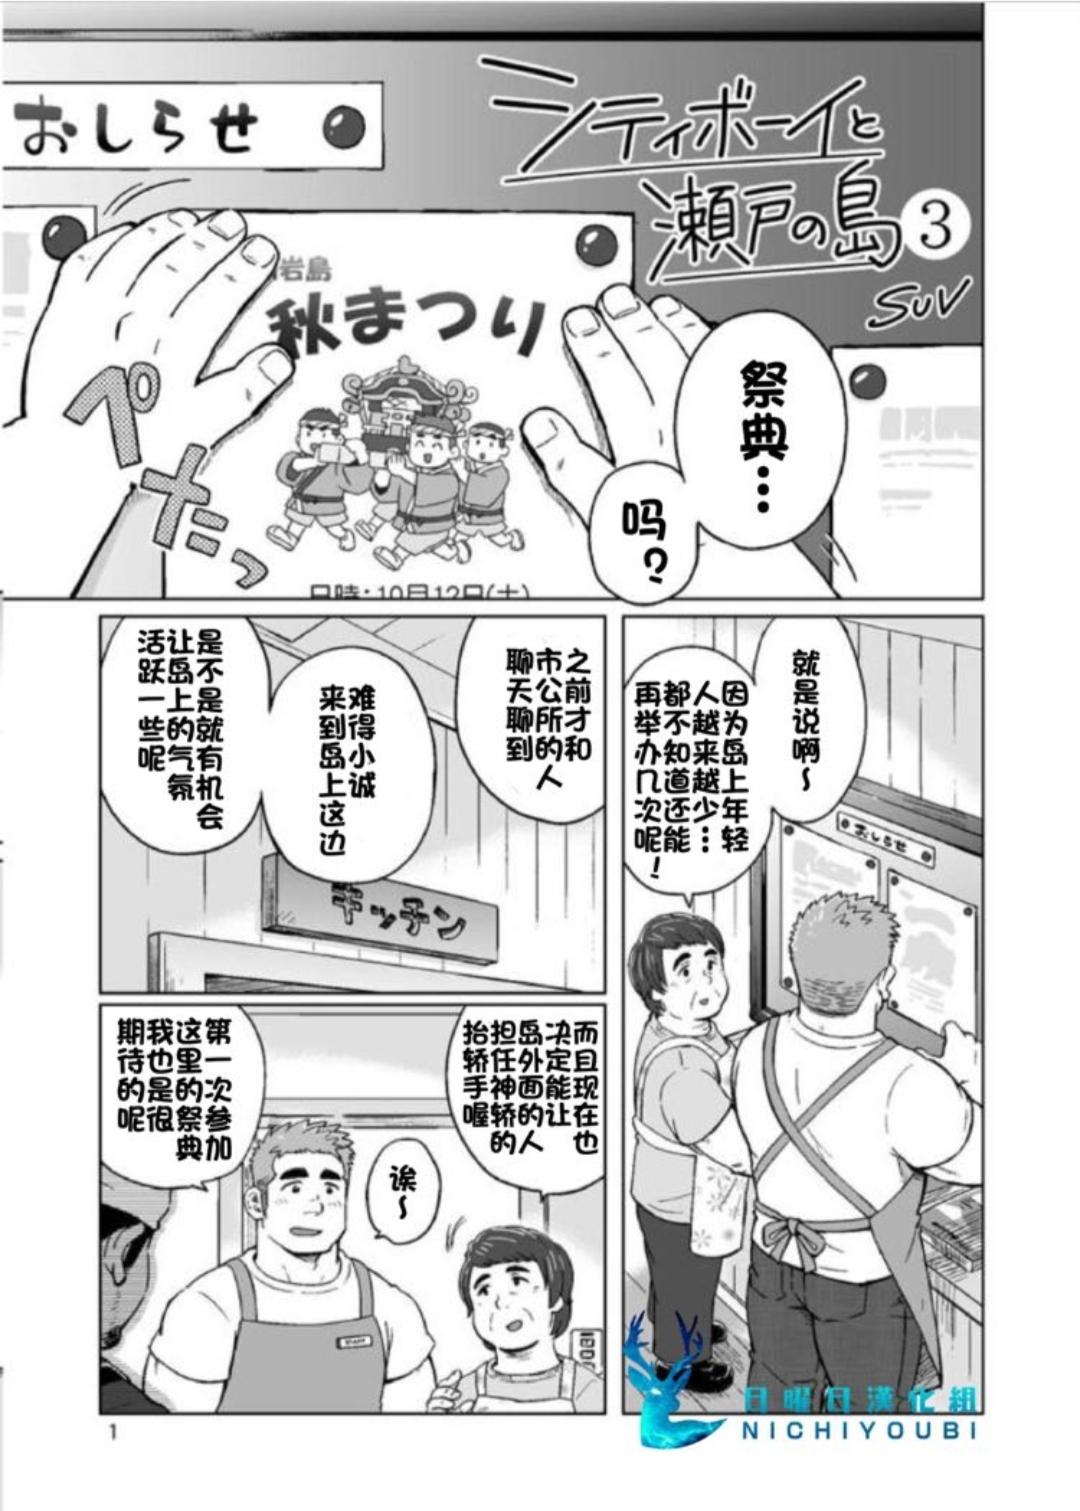 Moms SUV WAVE（SUV）シティボイと瀬戸の島（城市男孩与濑户岛）（Chinese）（简体中文） Step - Page 2